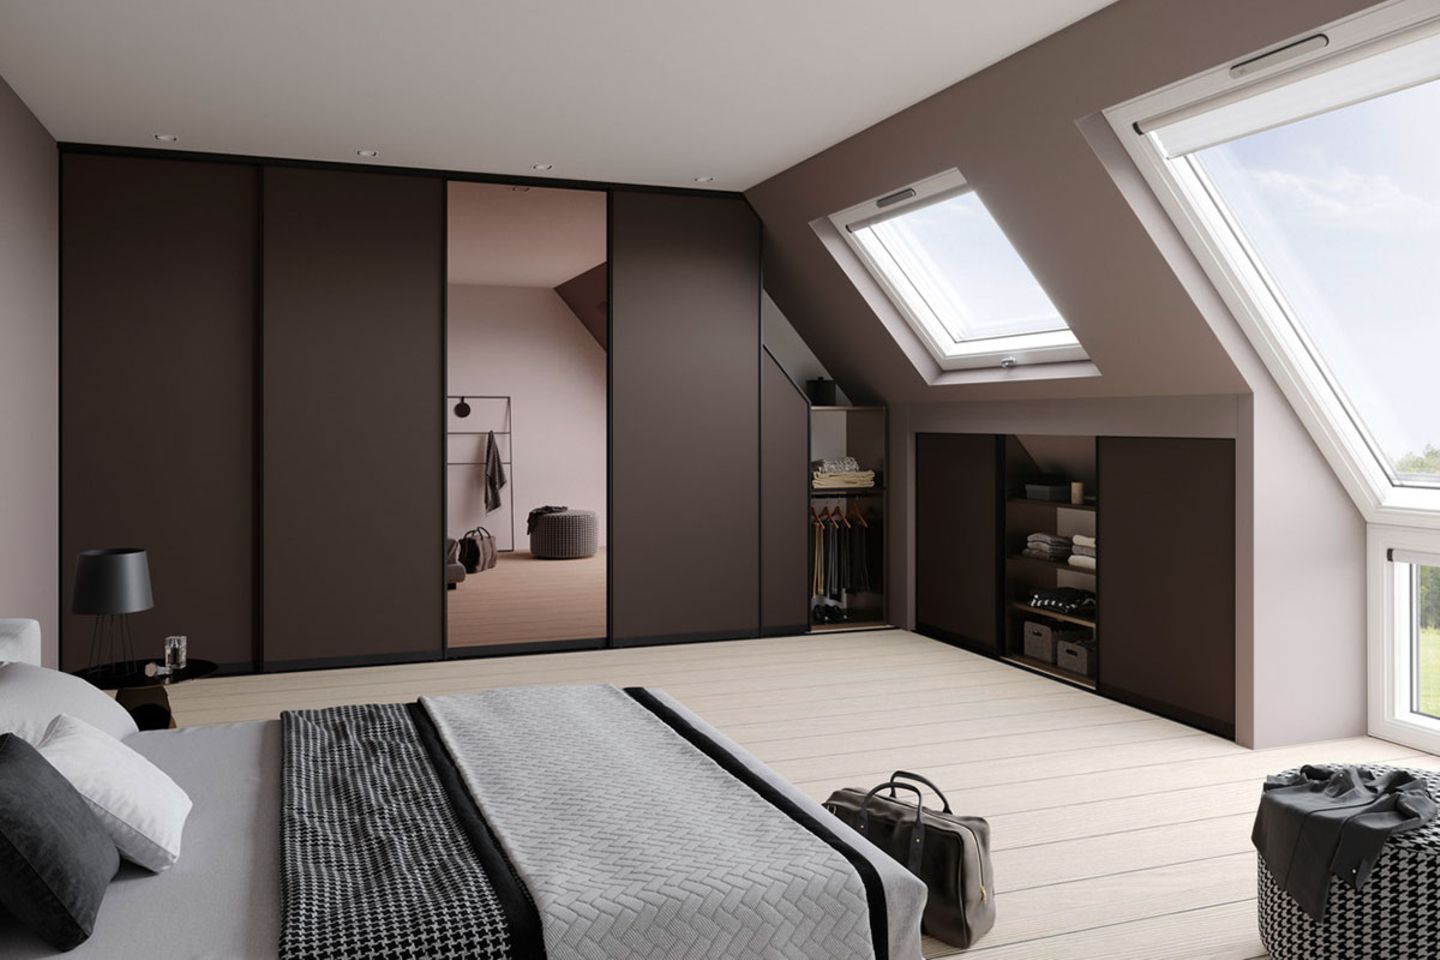 schlafzimmer mit dachschräge: tipps zum einrichten - [schÖner wohnen]